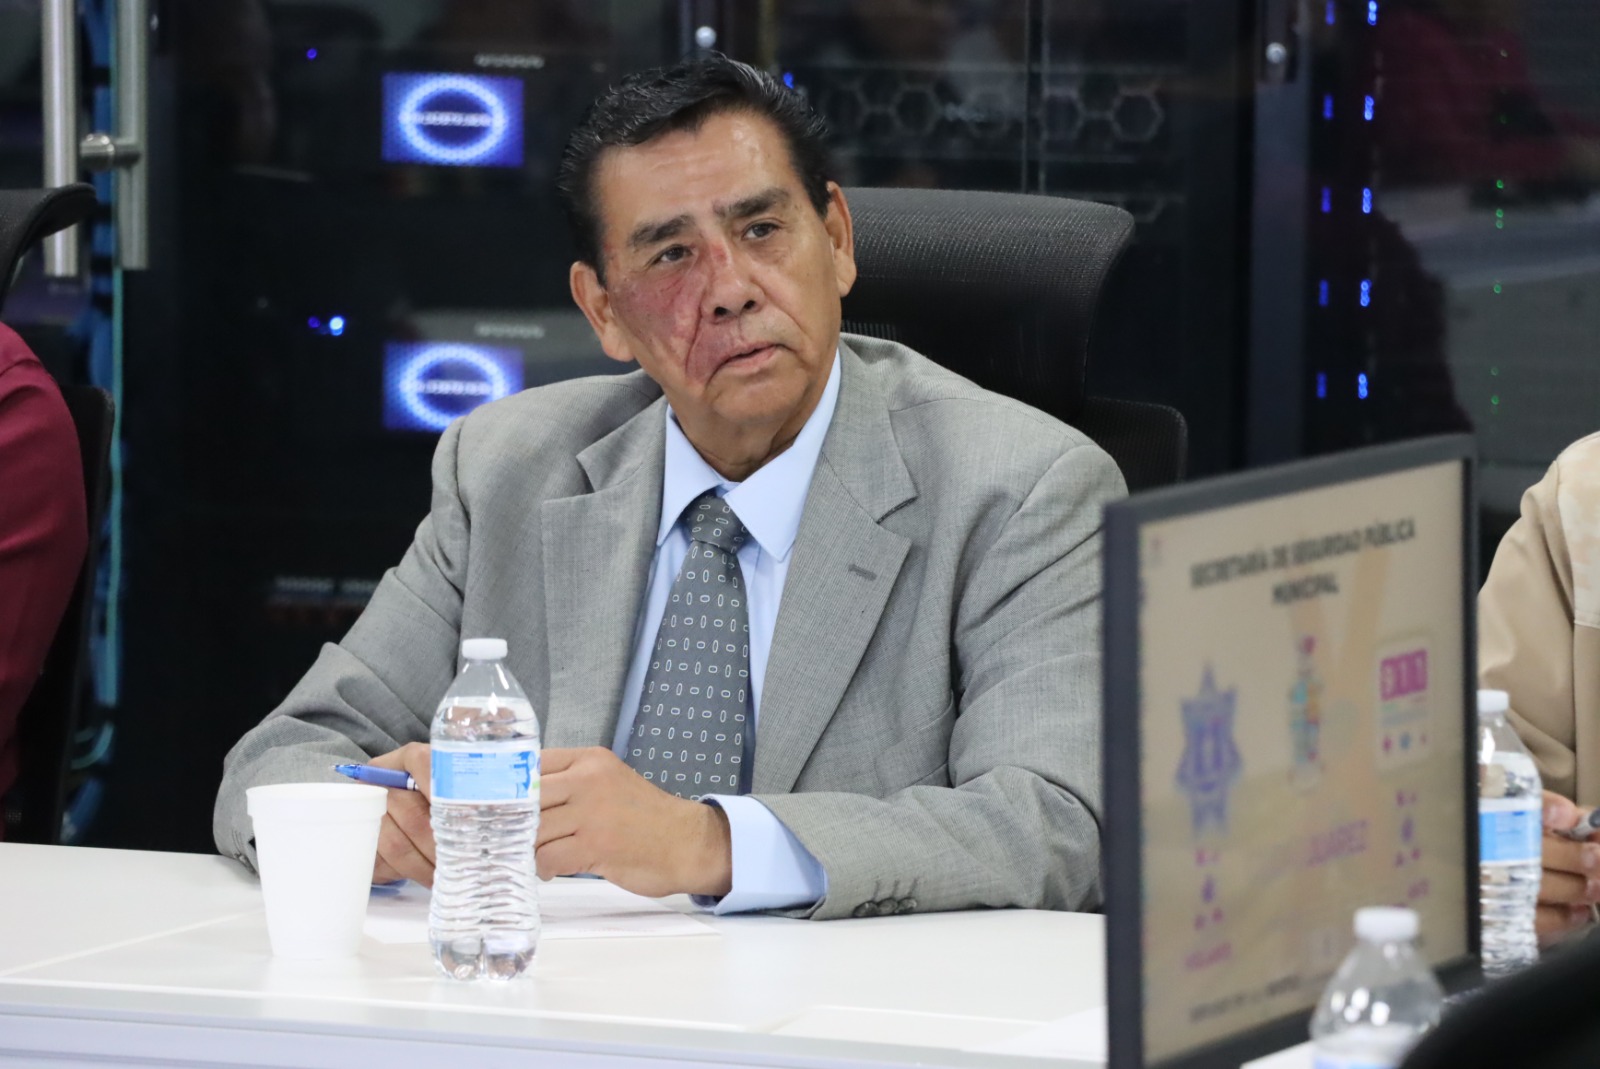 Personas en movilidad conocen la generosidad de Juárez: Alcalde